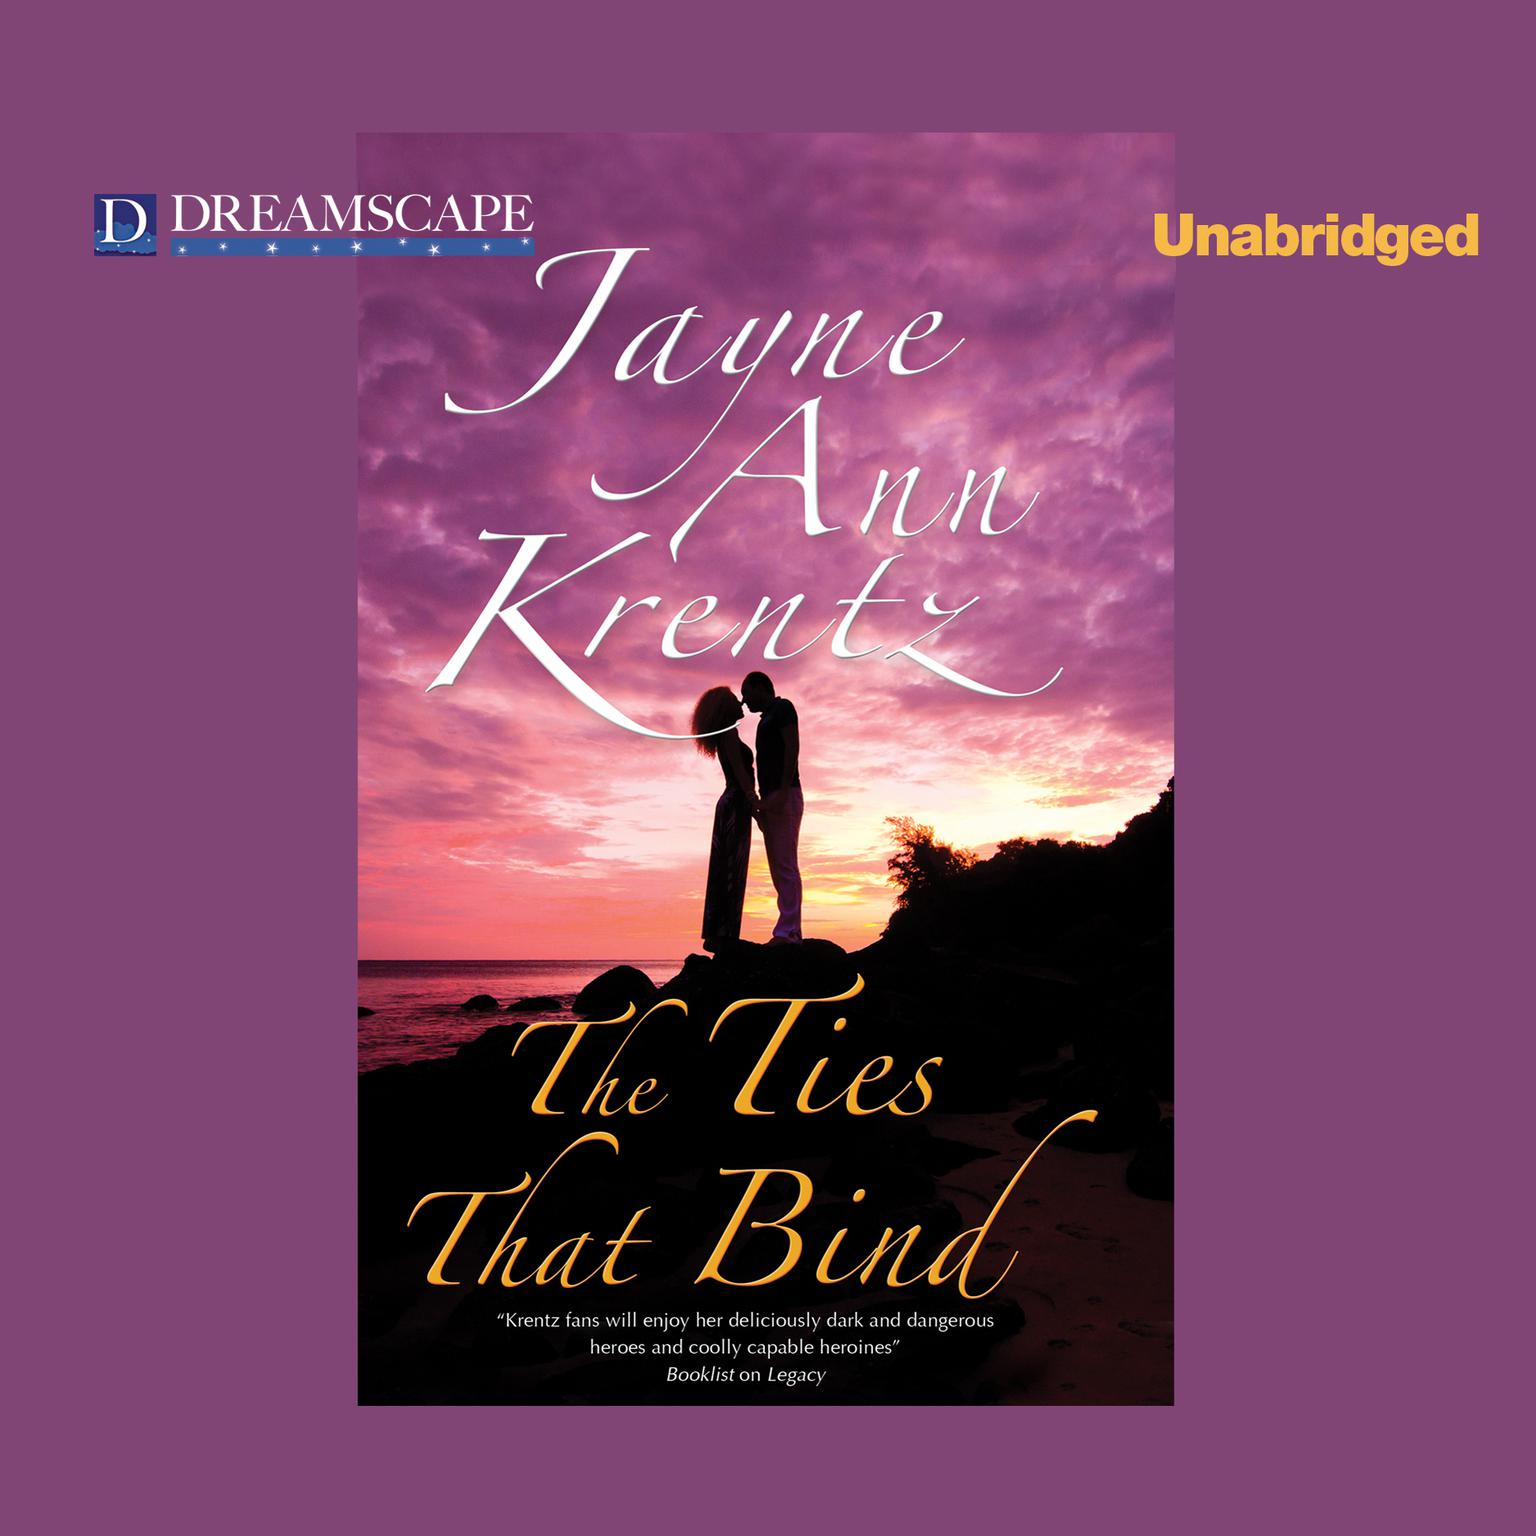 The Ties That Bind Audiobook, by Jayne Ann Krentz